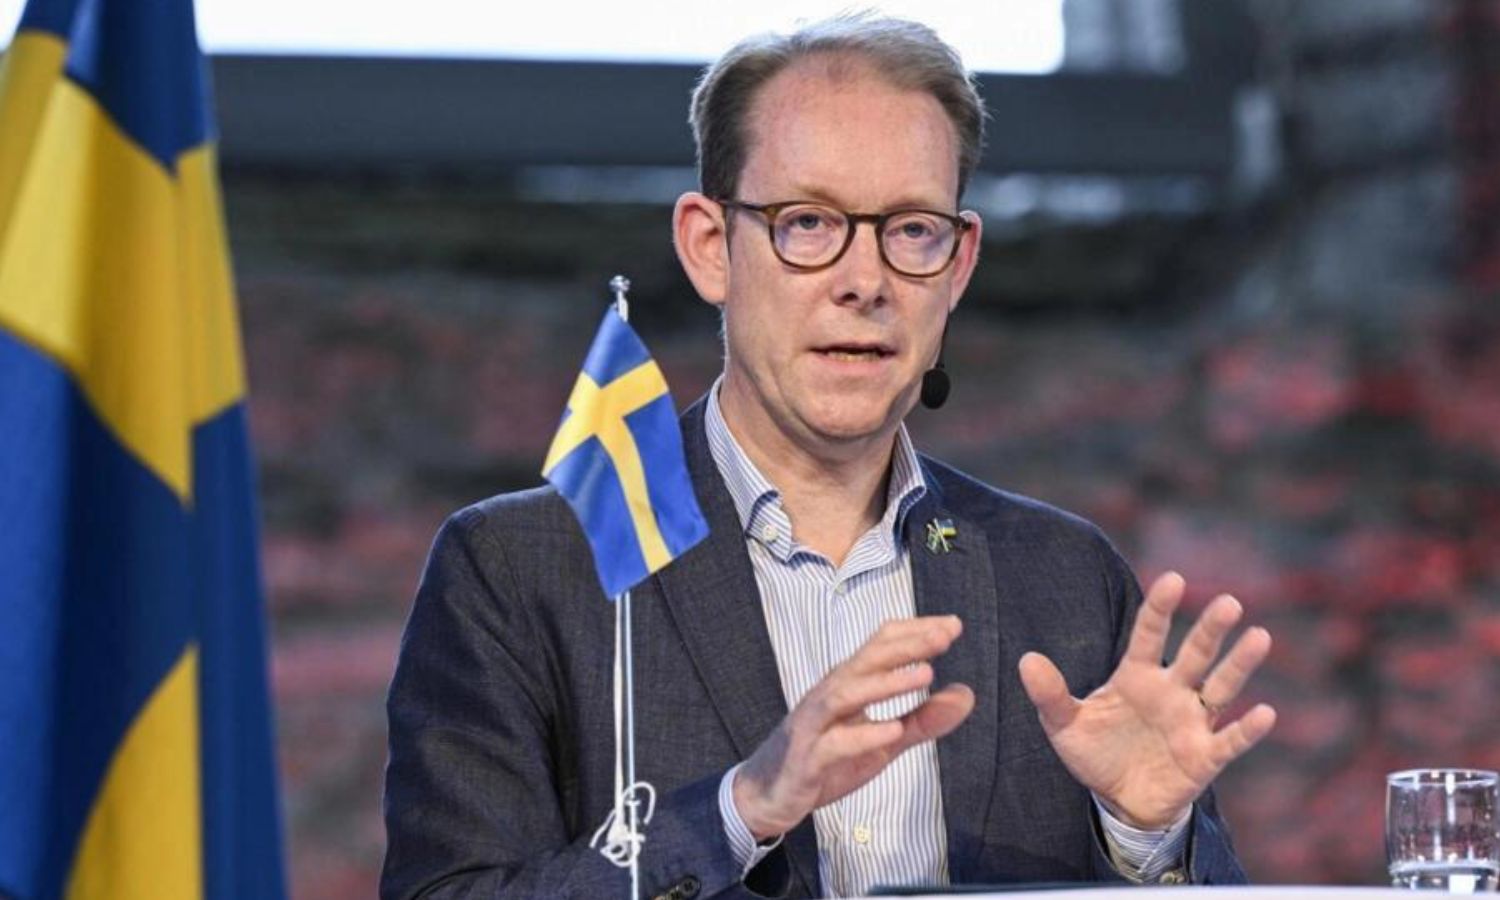 وزير الخارجية السويدي توبياس بيلستروم يلقي كلمة في مؤتمر صحفي في أطلال كنيسة القديس نيكولاي في فيسبي بجزيرة جوتلاند السويدية - 27 حزيران 2023 (فرانس 24)